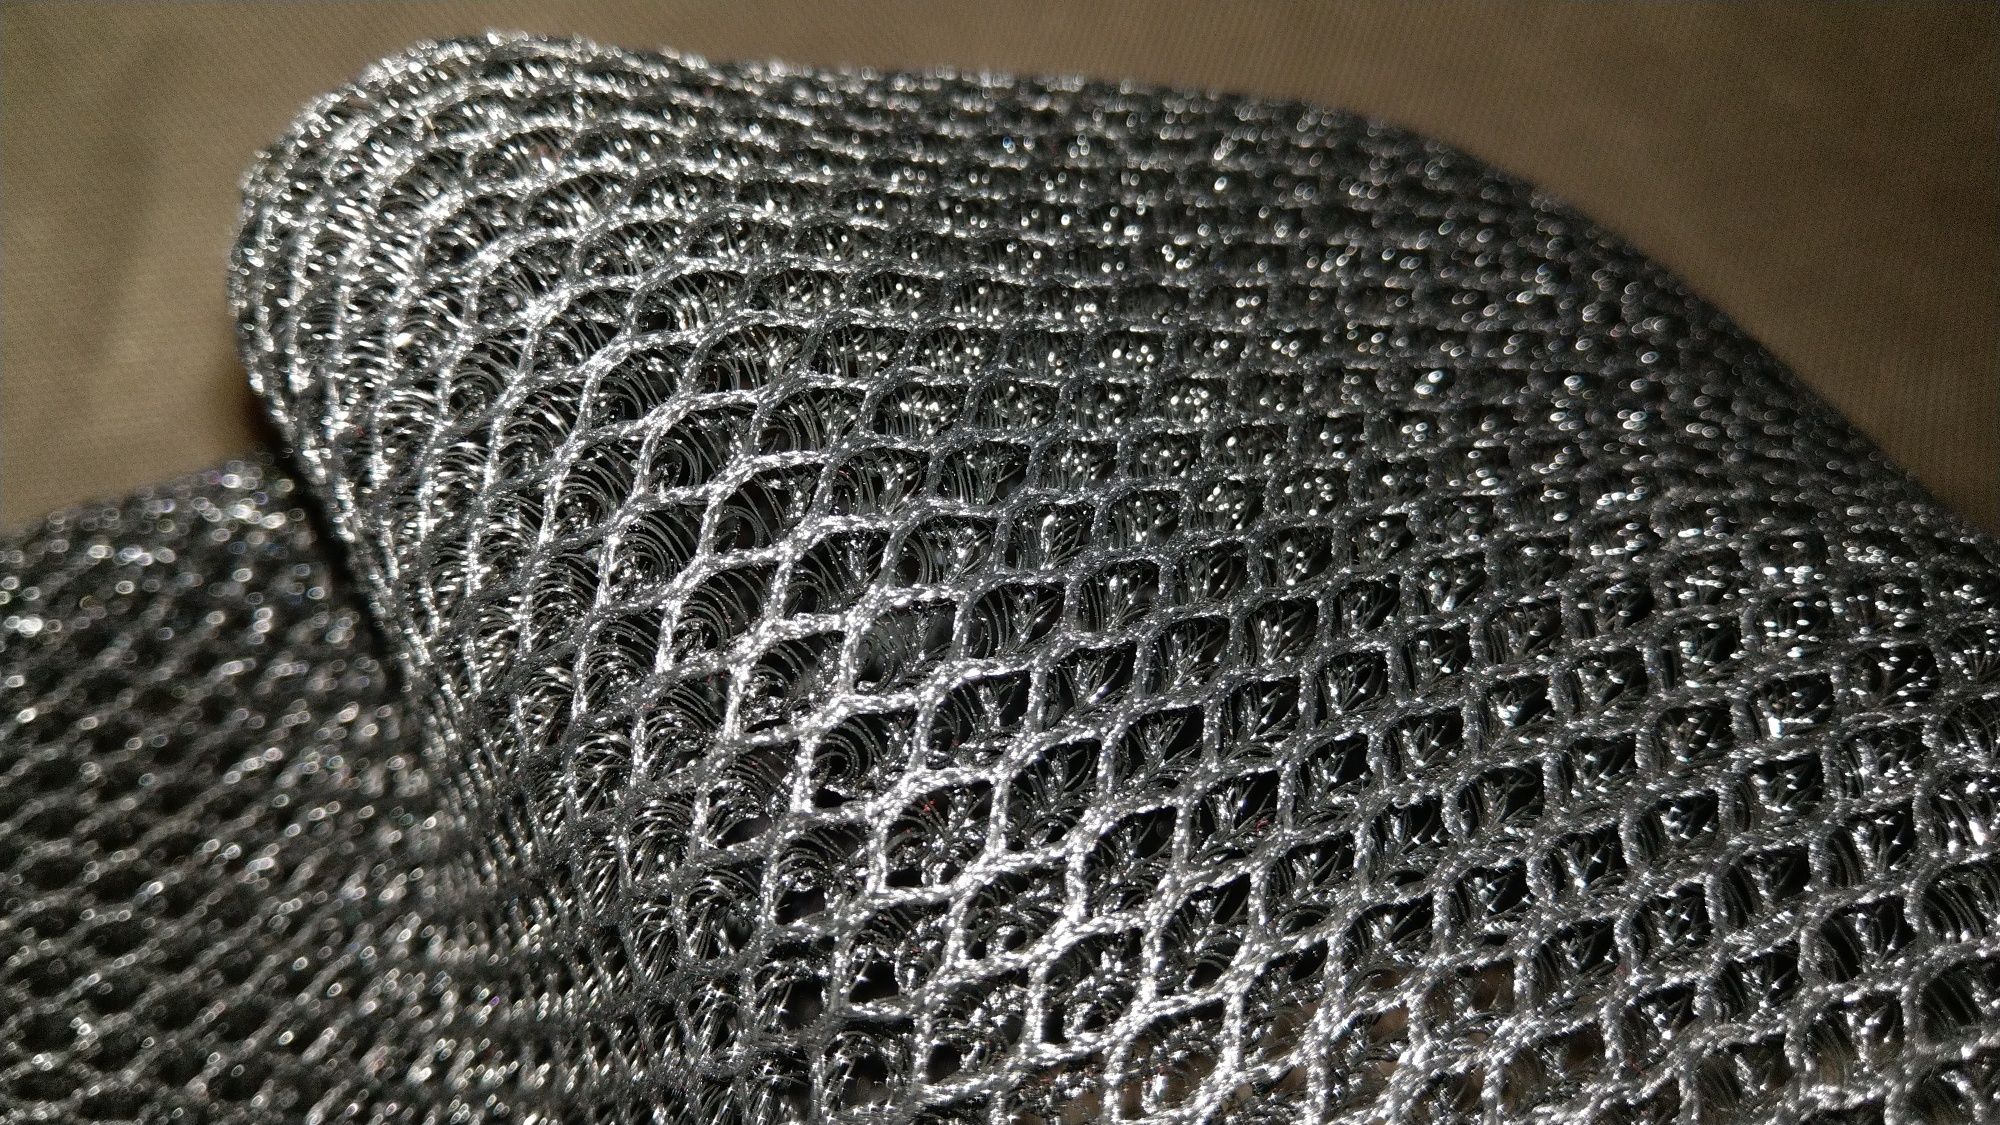 3D сітка на мотоцикл сетка на сидение чехол на сидушку мото M L XL 4XL